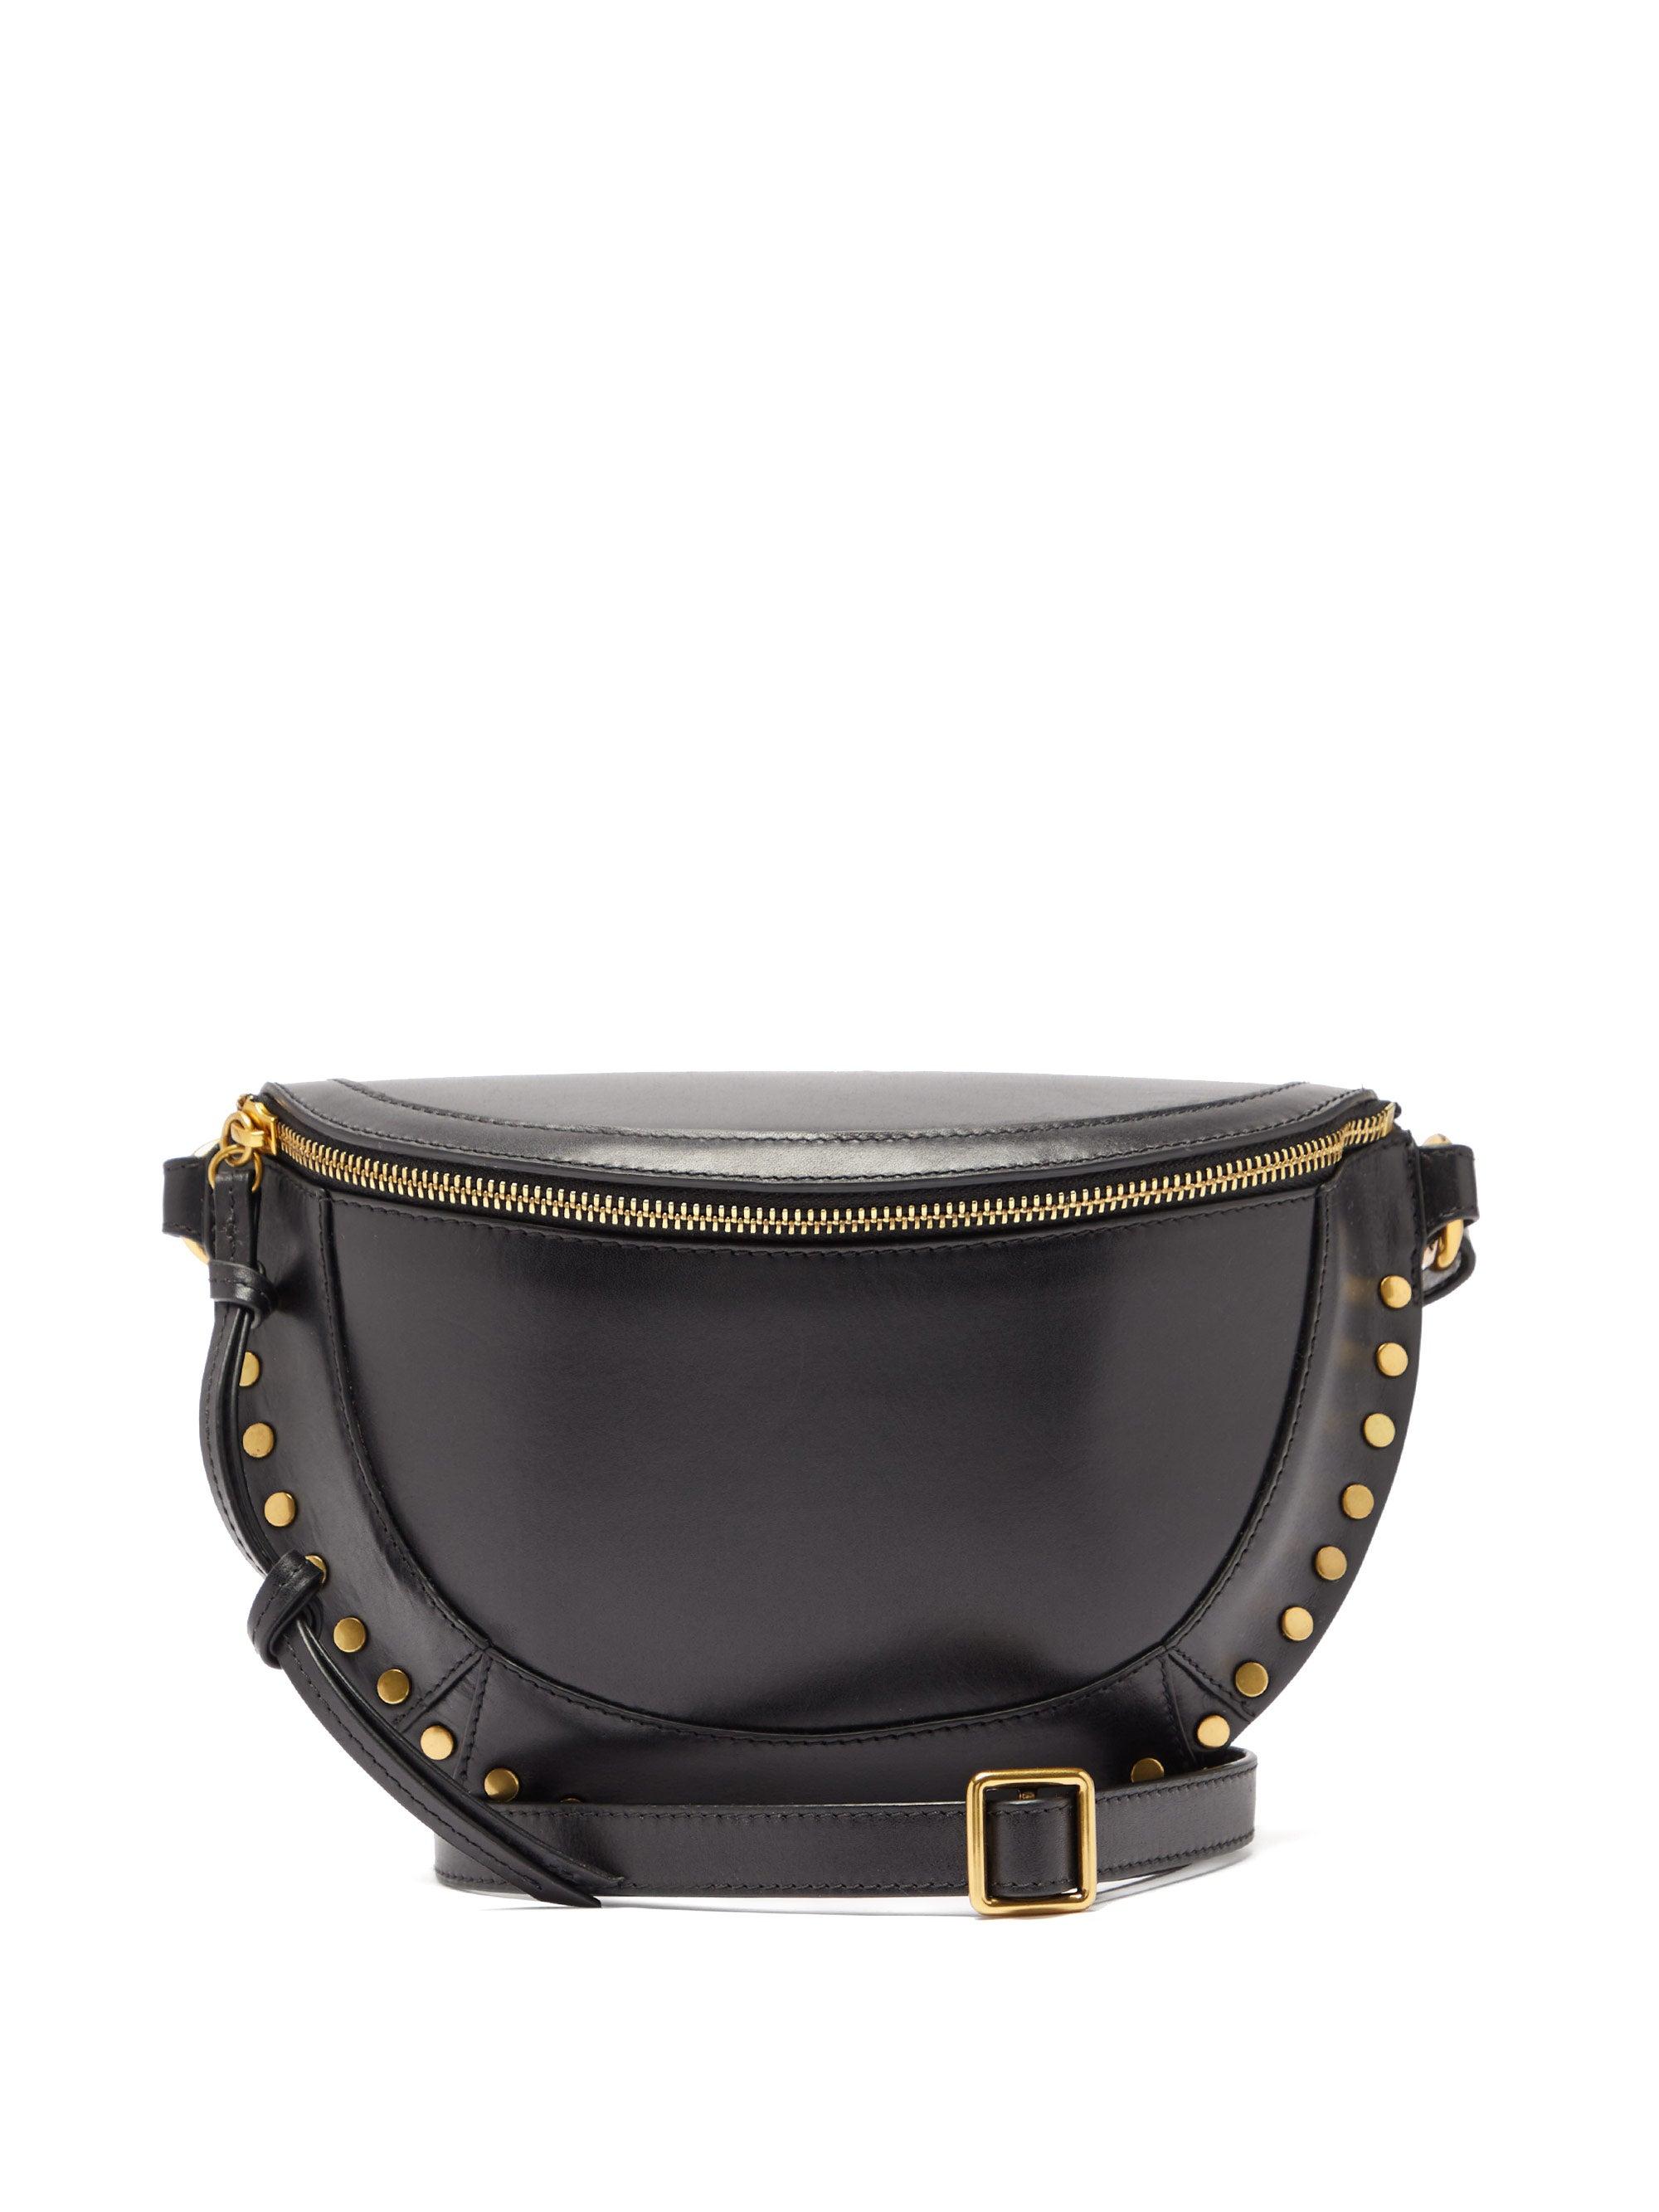 Isabel Marant Skano Studded Leather Belt Bag in Black - Lyst